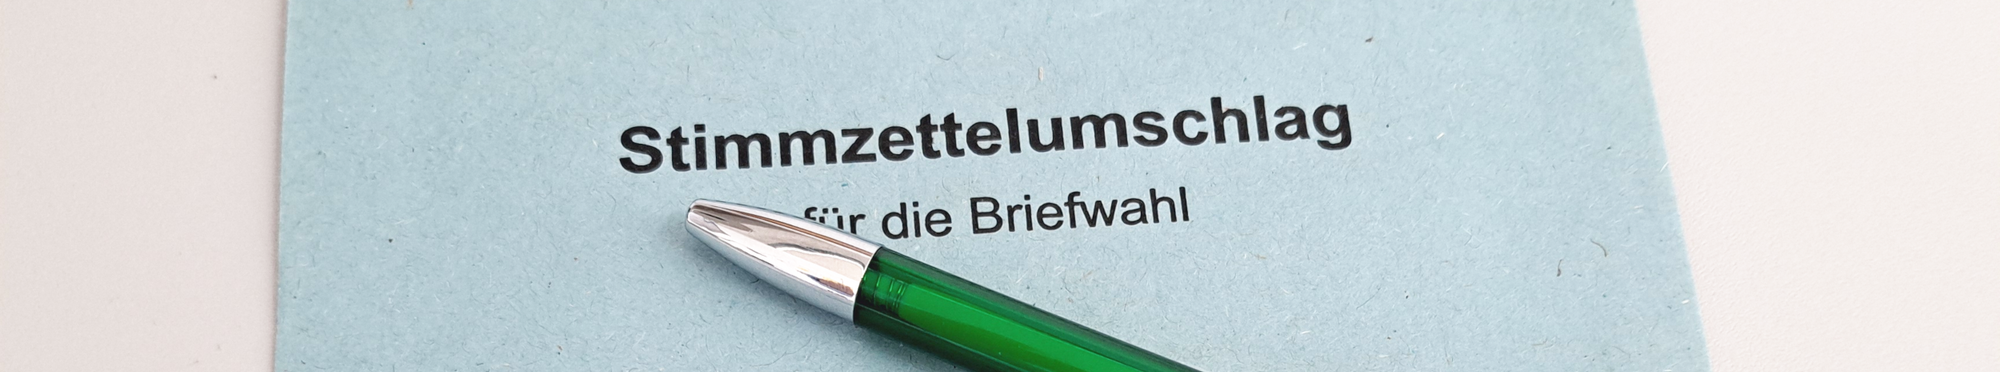 Ein blauer Briefwahlumschlag auf dem ein grüner Kugelschreiber mit dem Logo der Stadt Erftstadt liegt